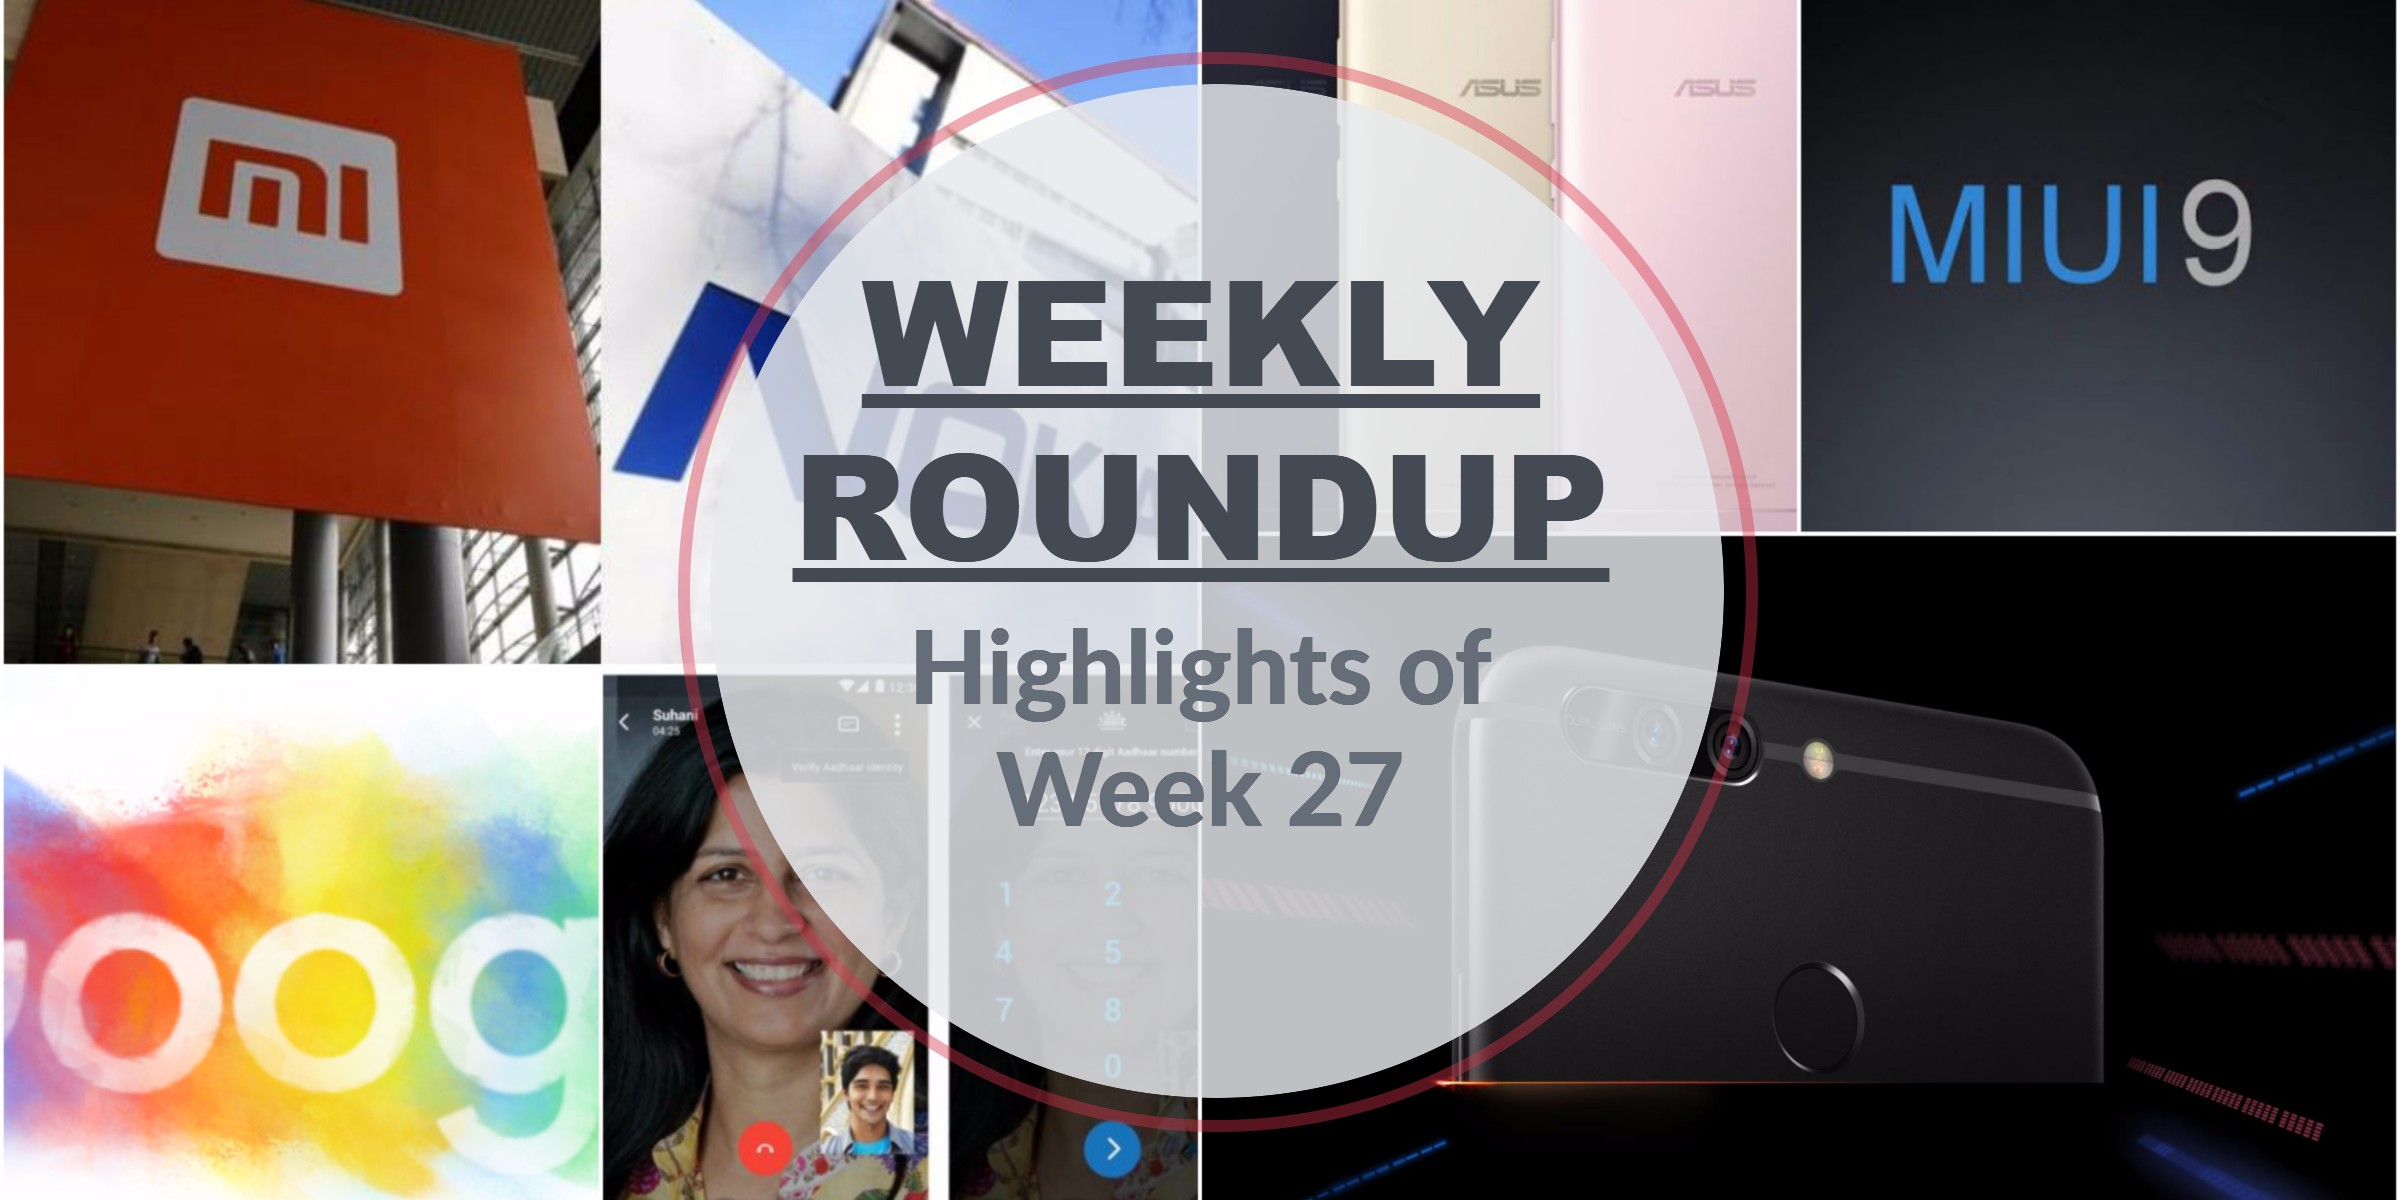 Weekly roundup: highlights of Week 27 1